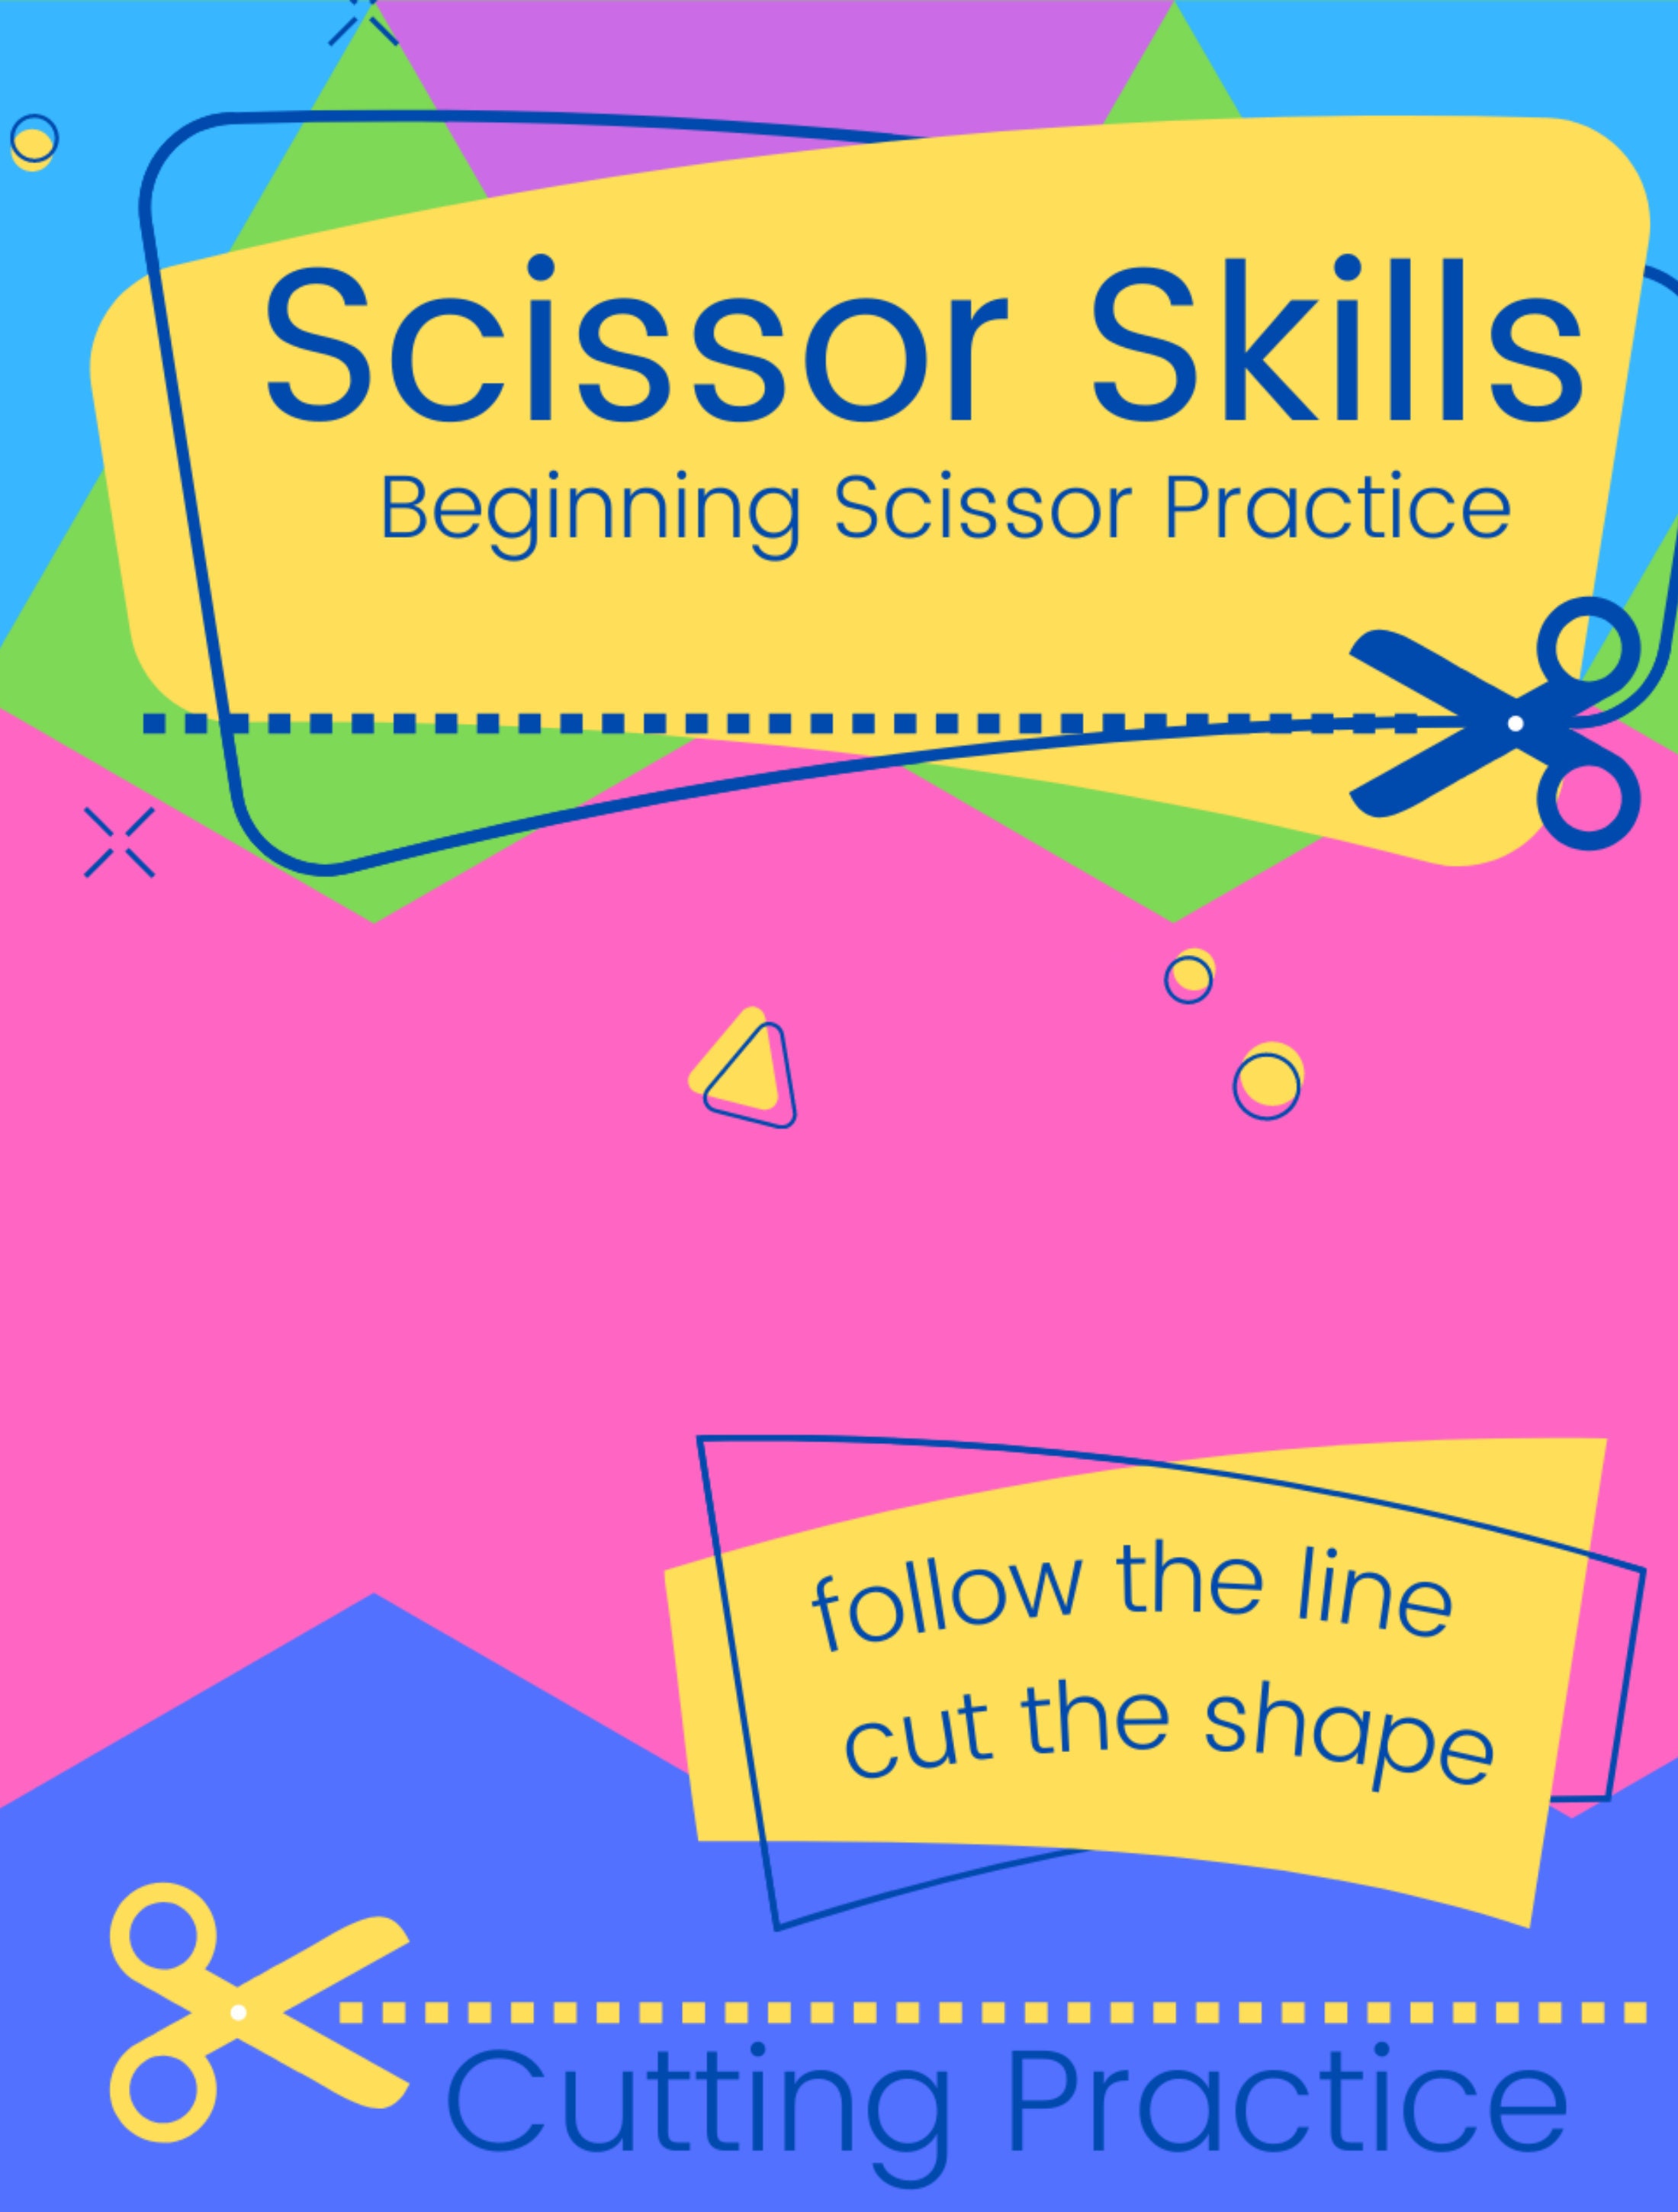 Scissor Skill Development Checklist for Ages 2-6